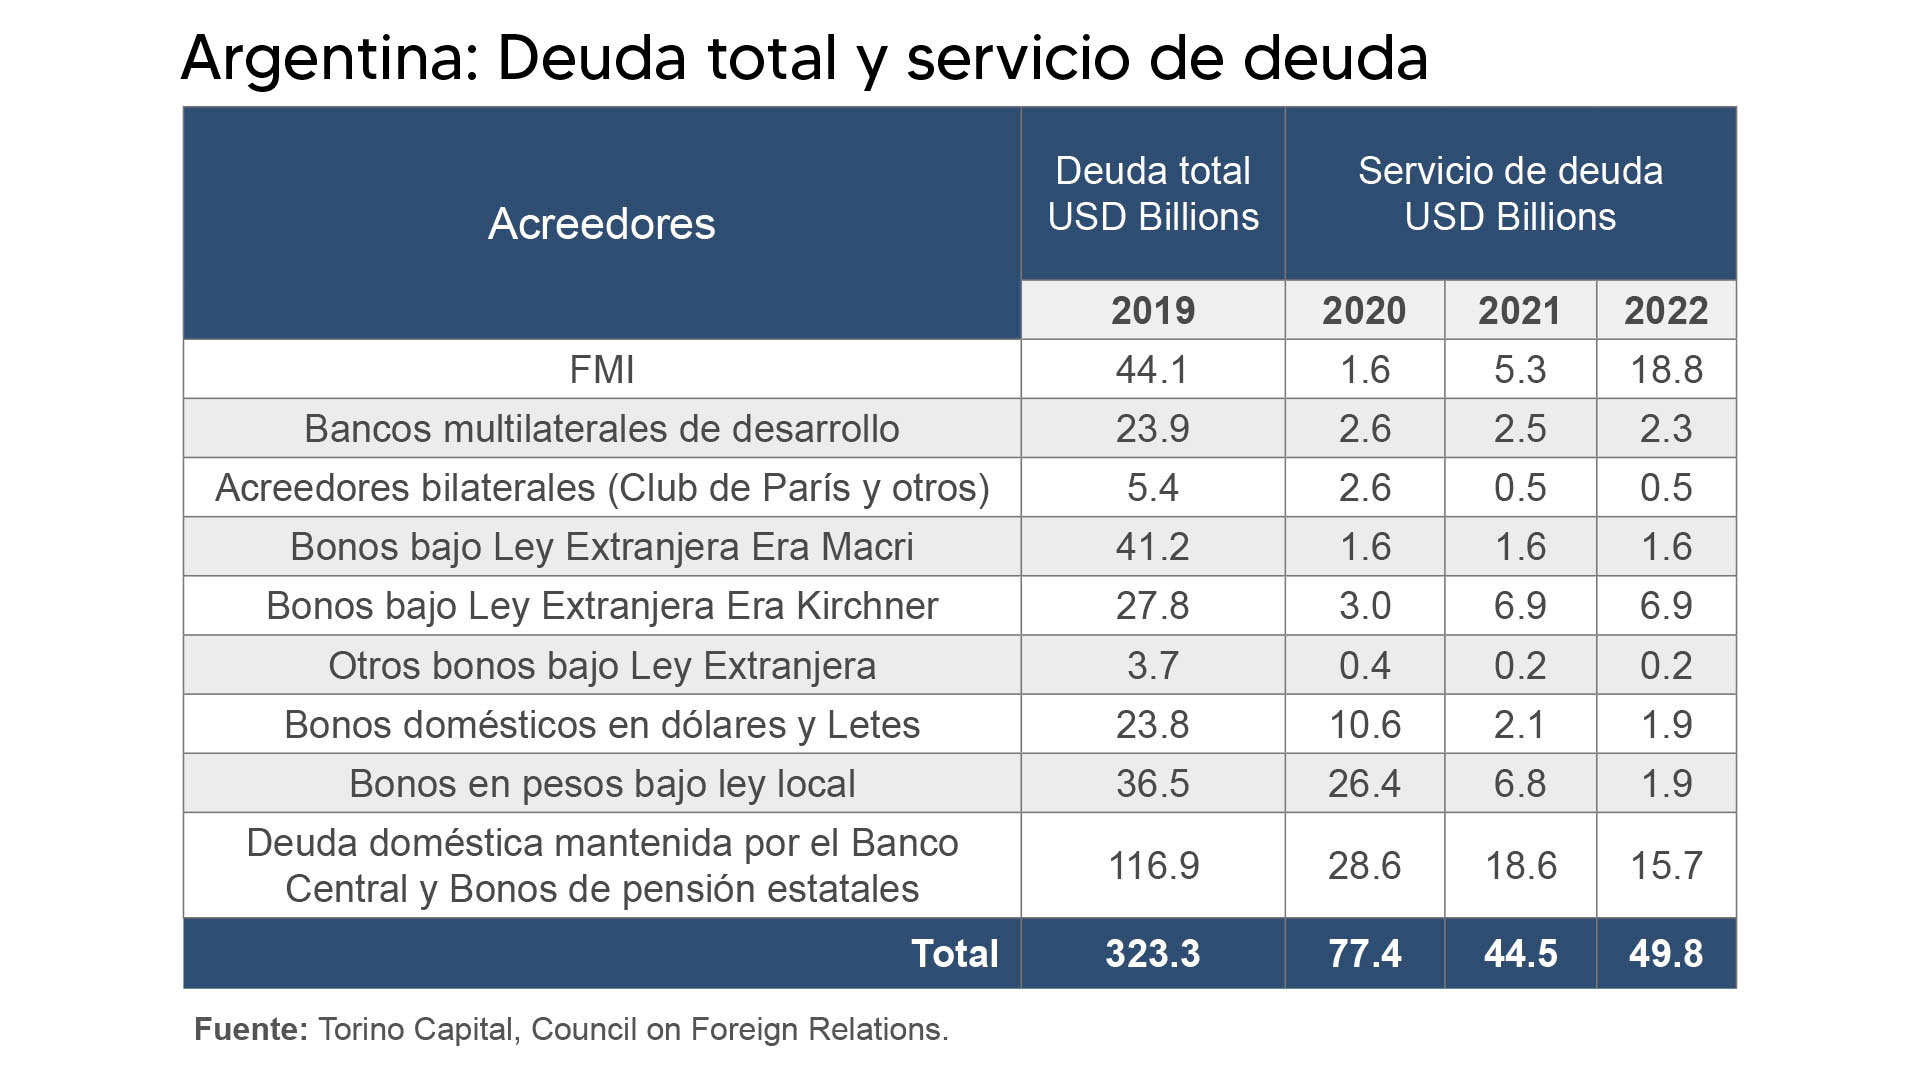 Los vencimientos de la deuda argentina
Fuente: Torino Economics